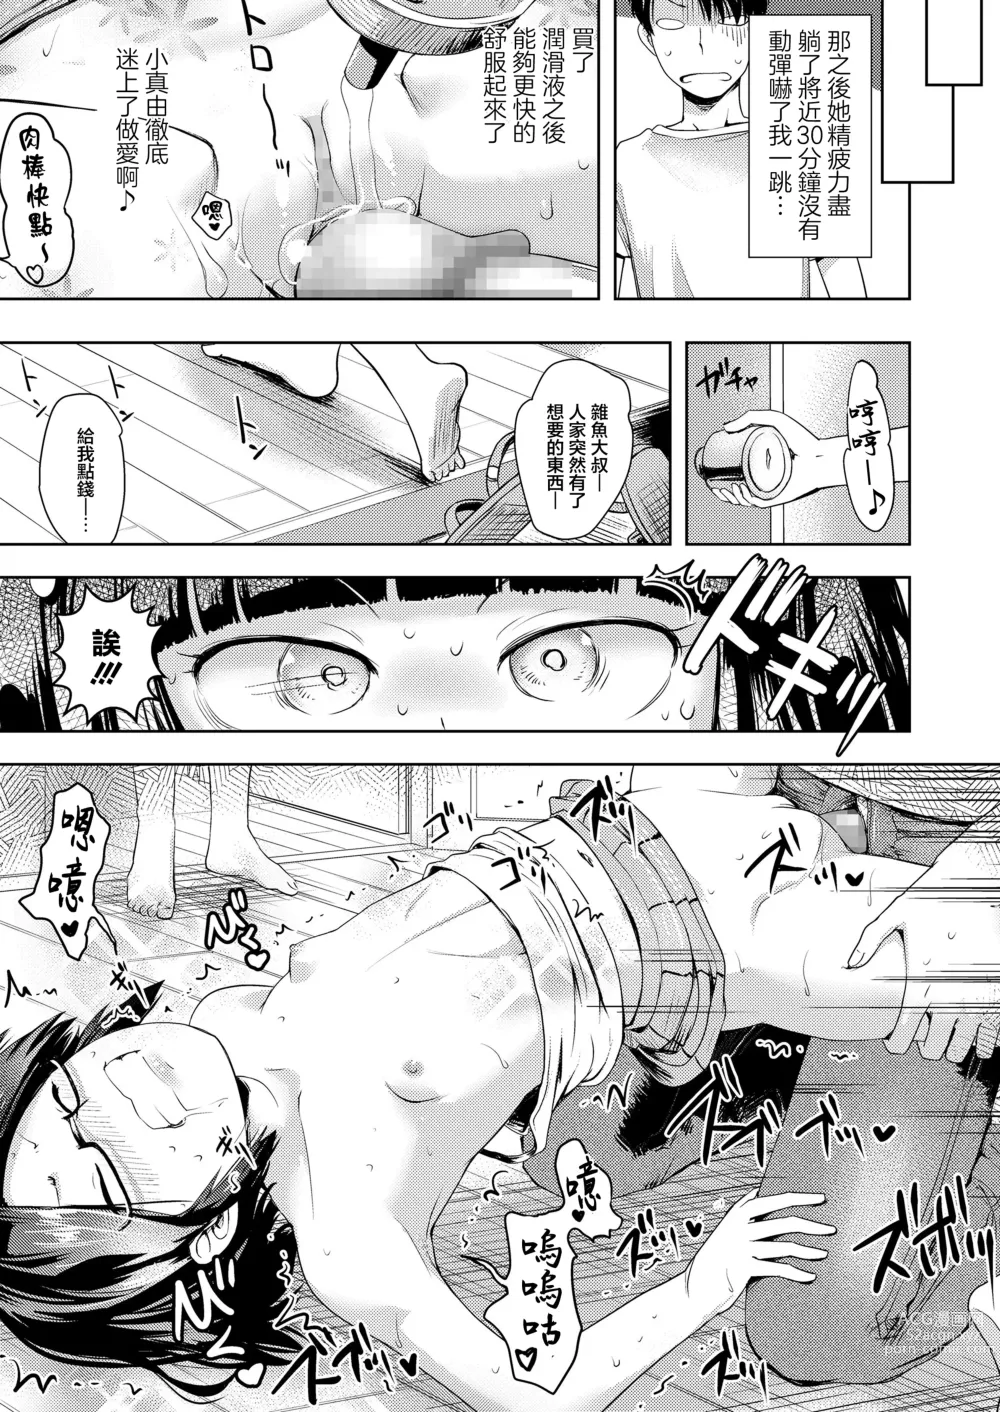 Page 15 of doujinshi Tousatsu no Tousatsu